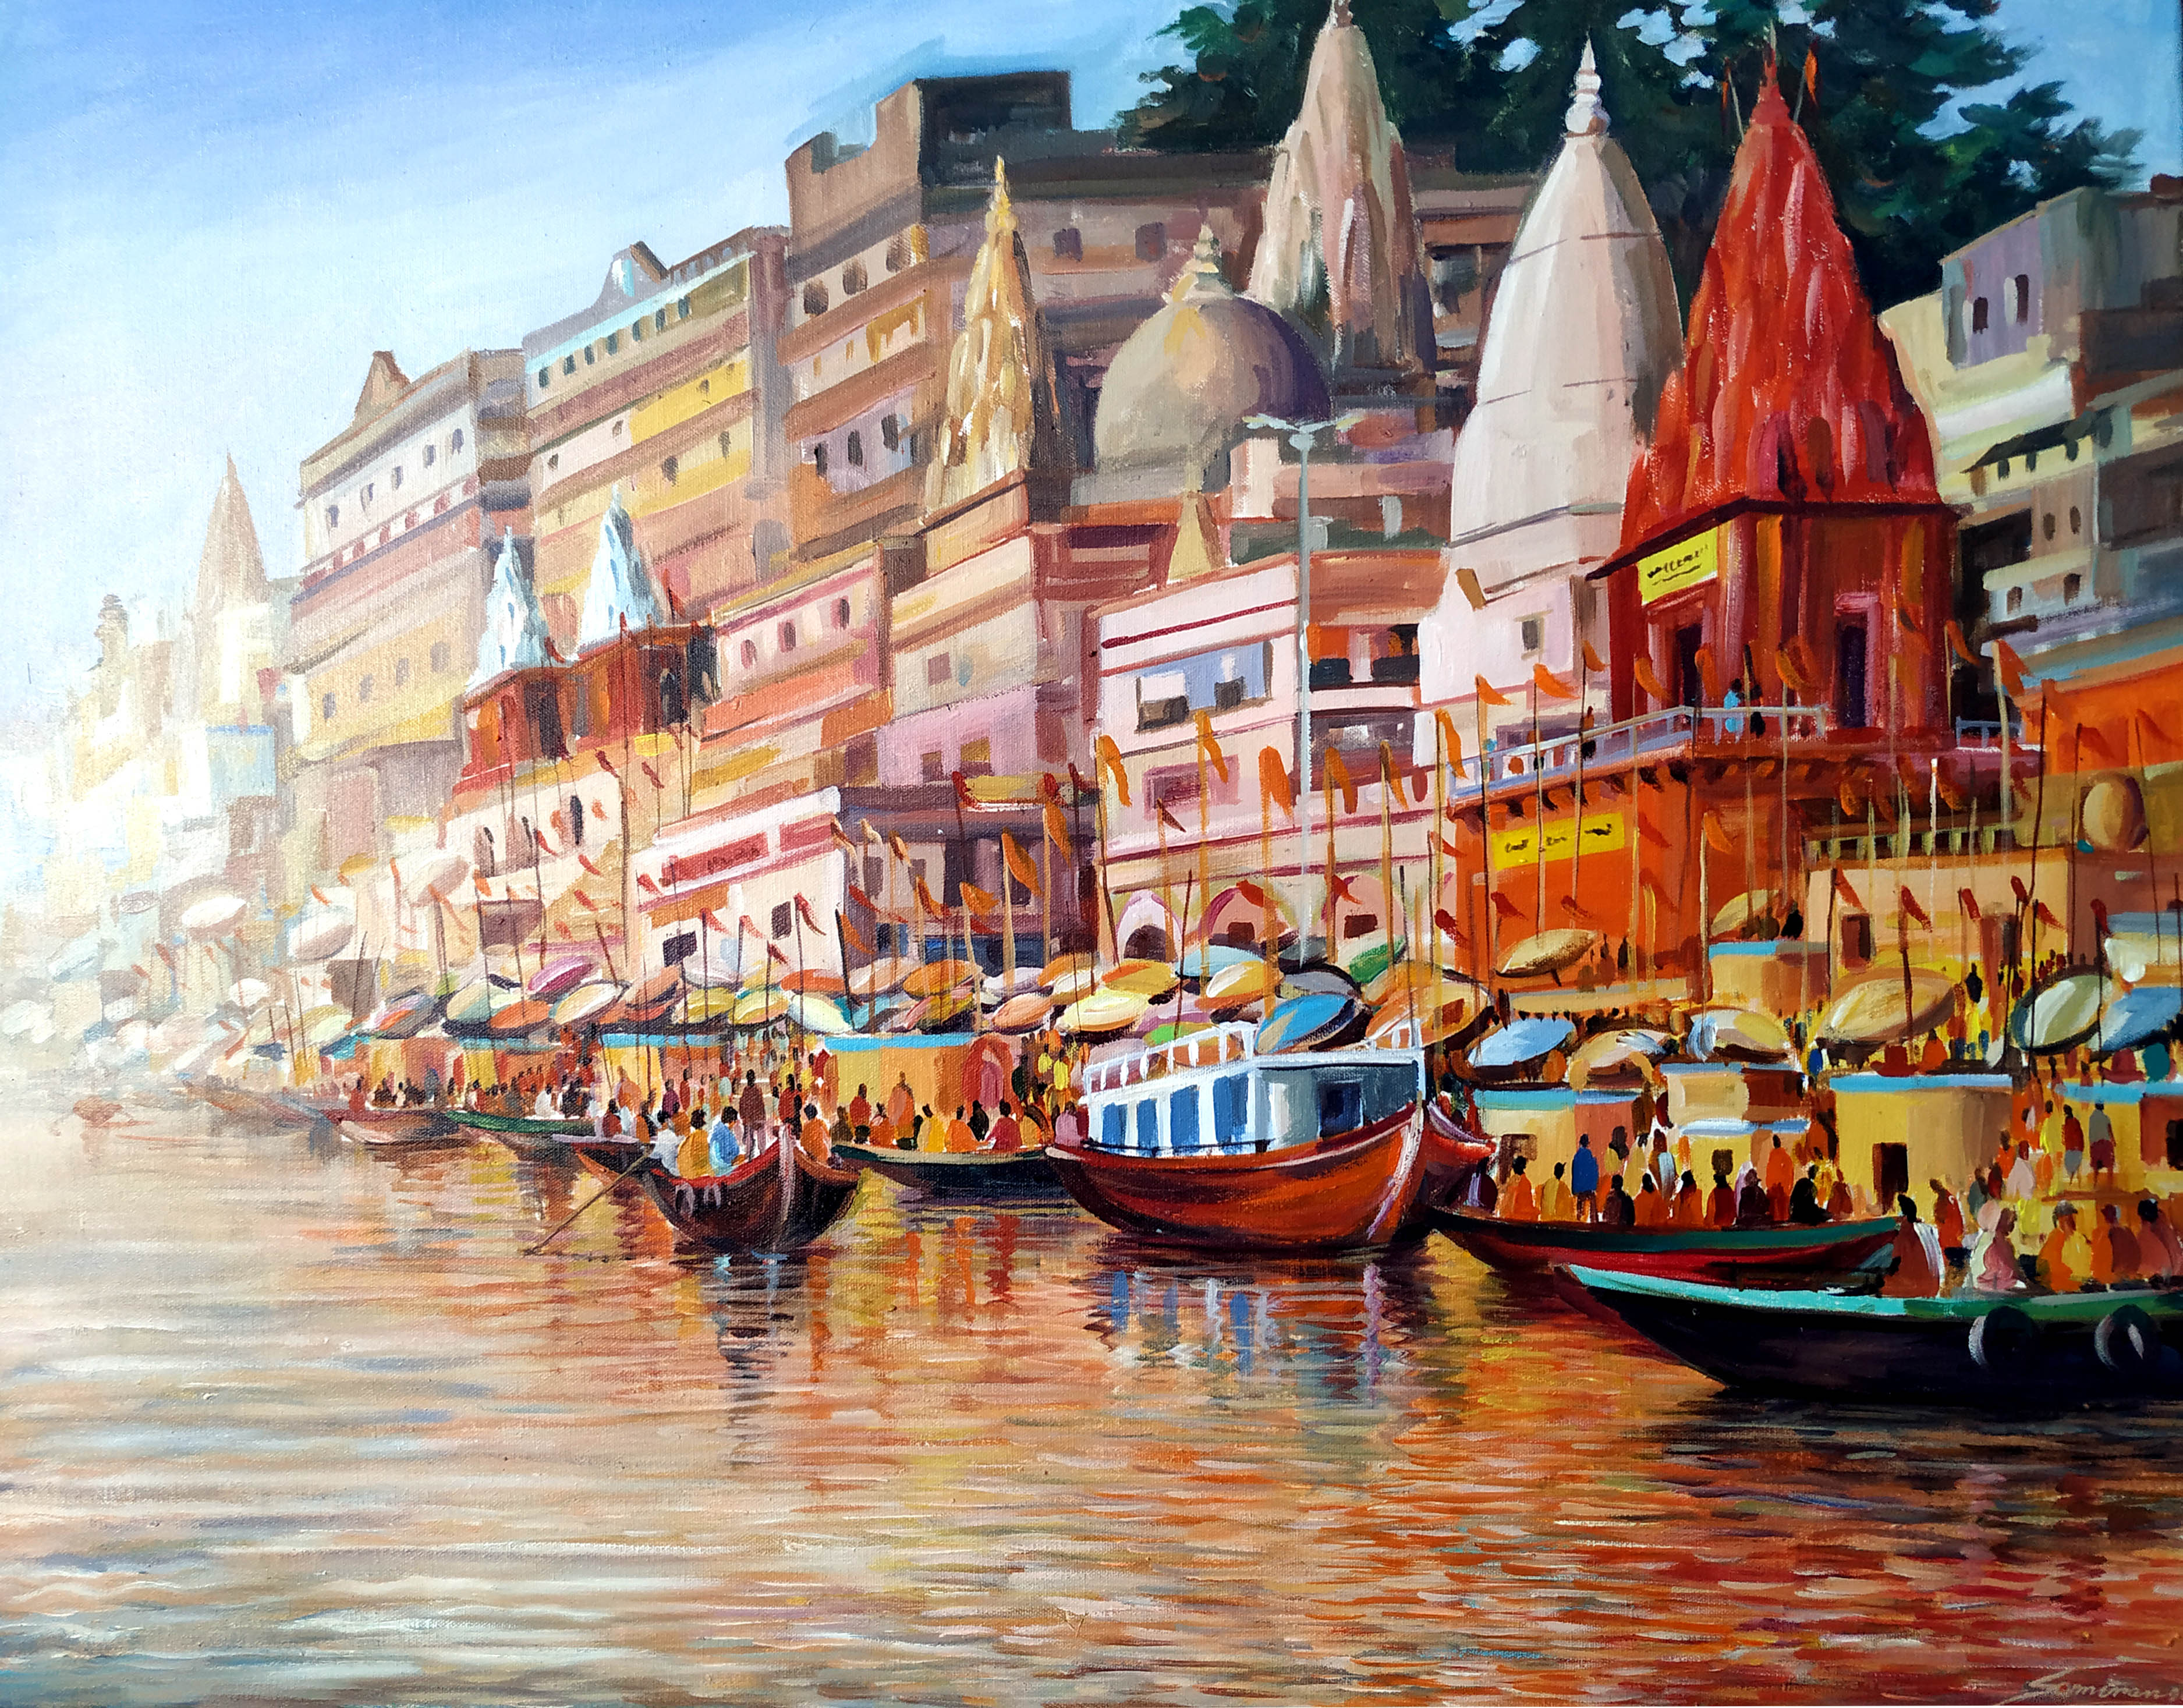 Subha Banaras Ghats